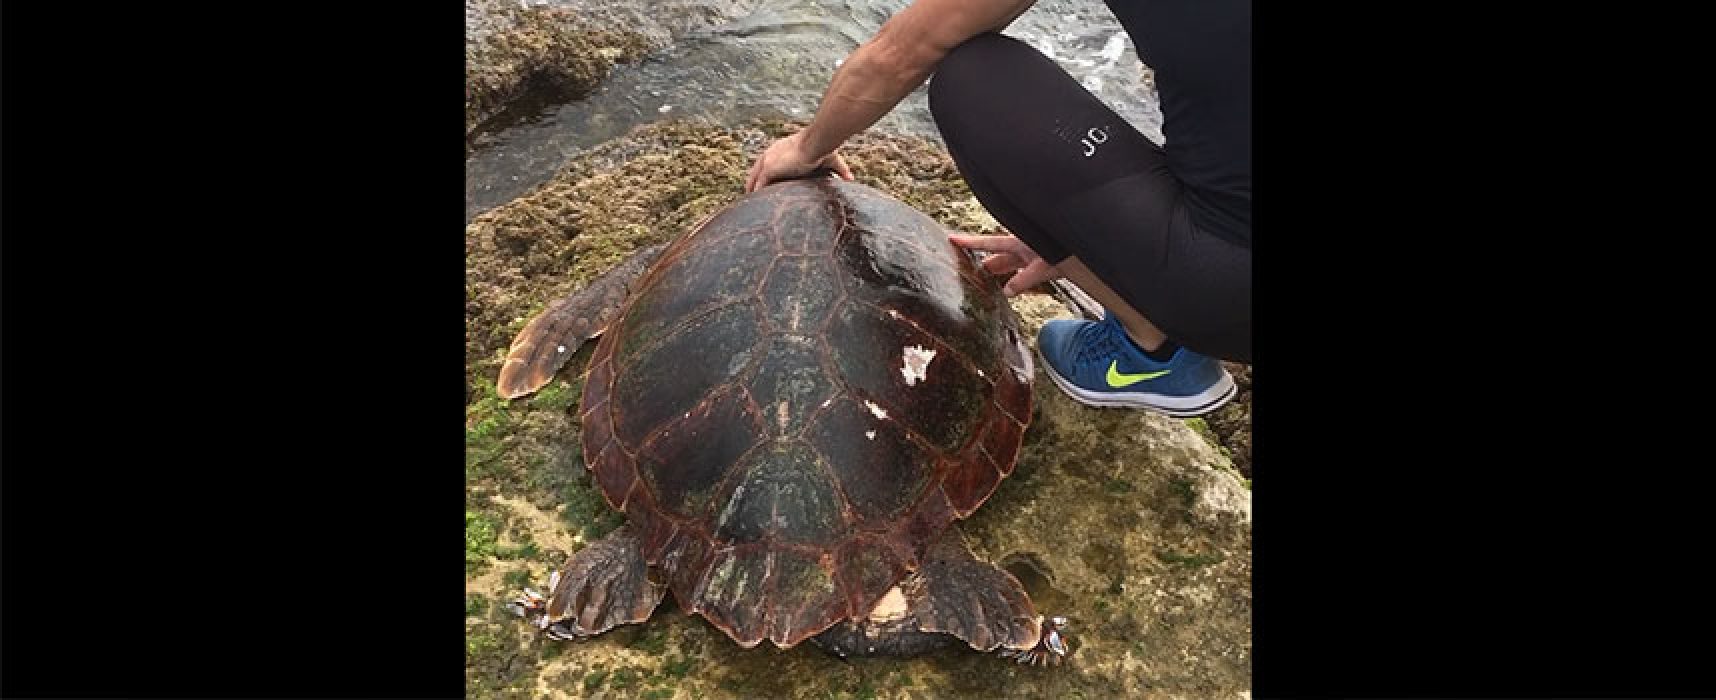 Nuova carcassa di tartaruga ritrovata in zona Paternostro / VIDEO